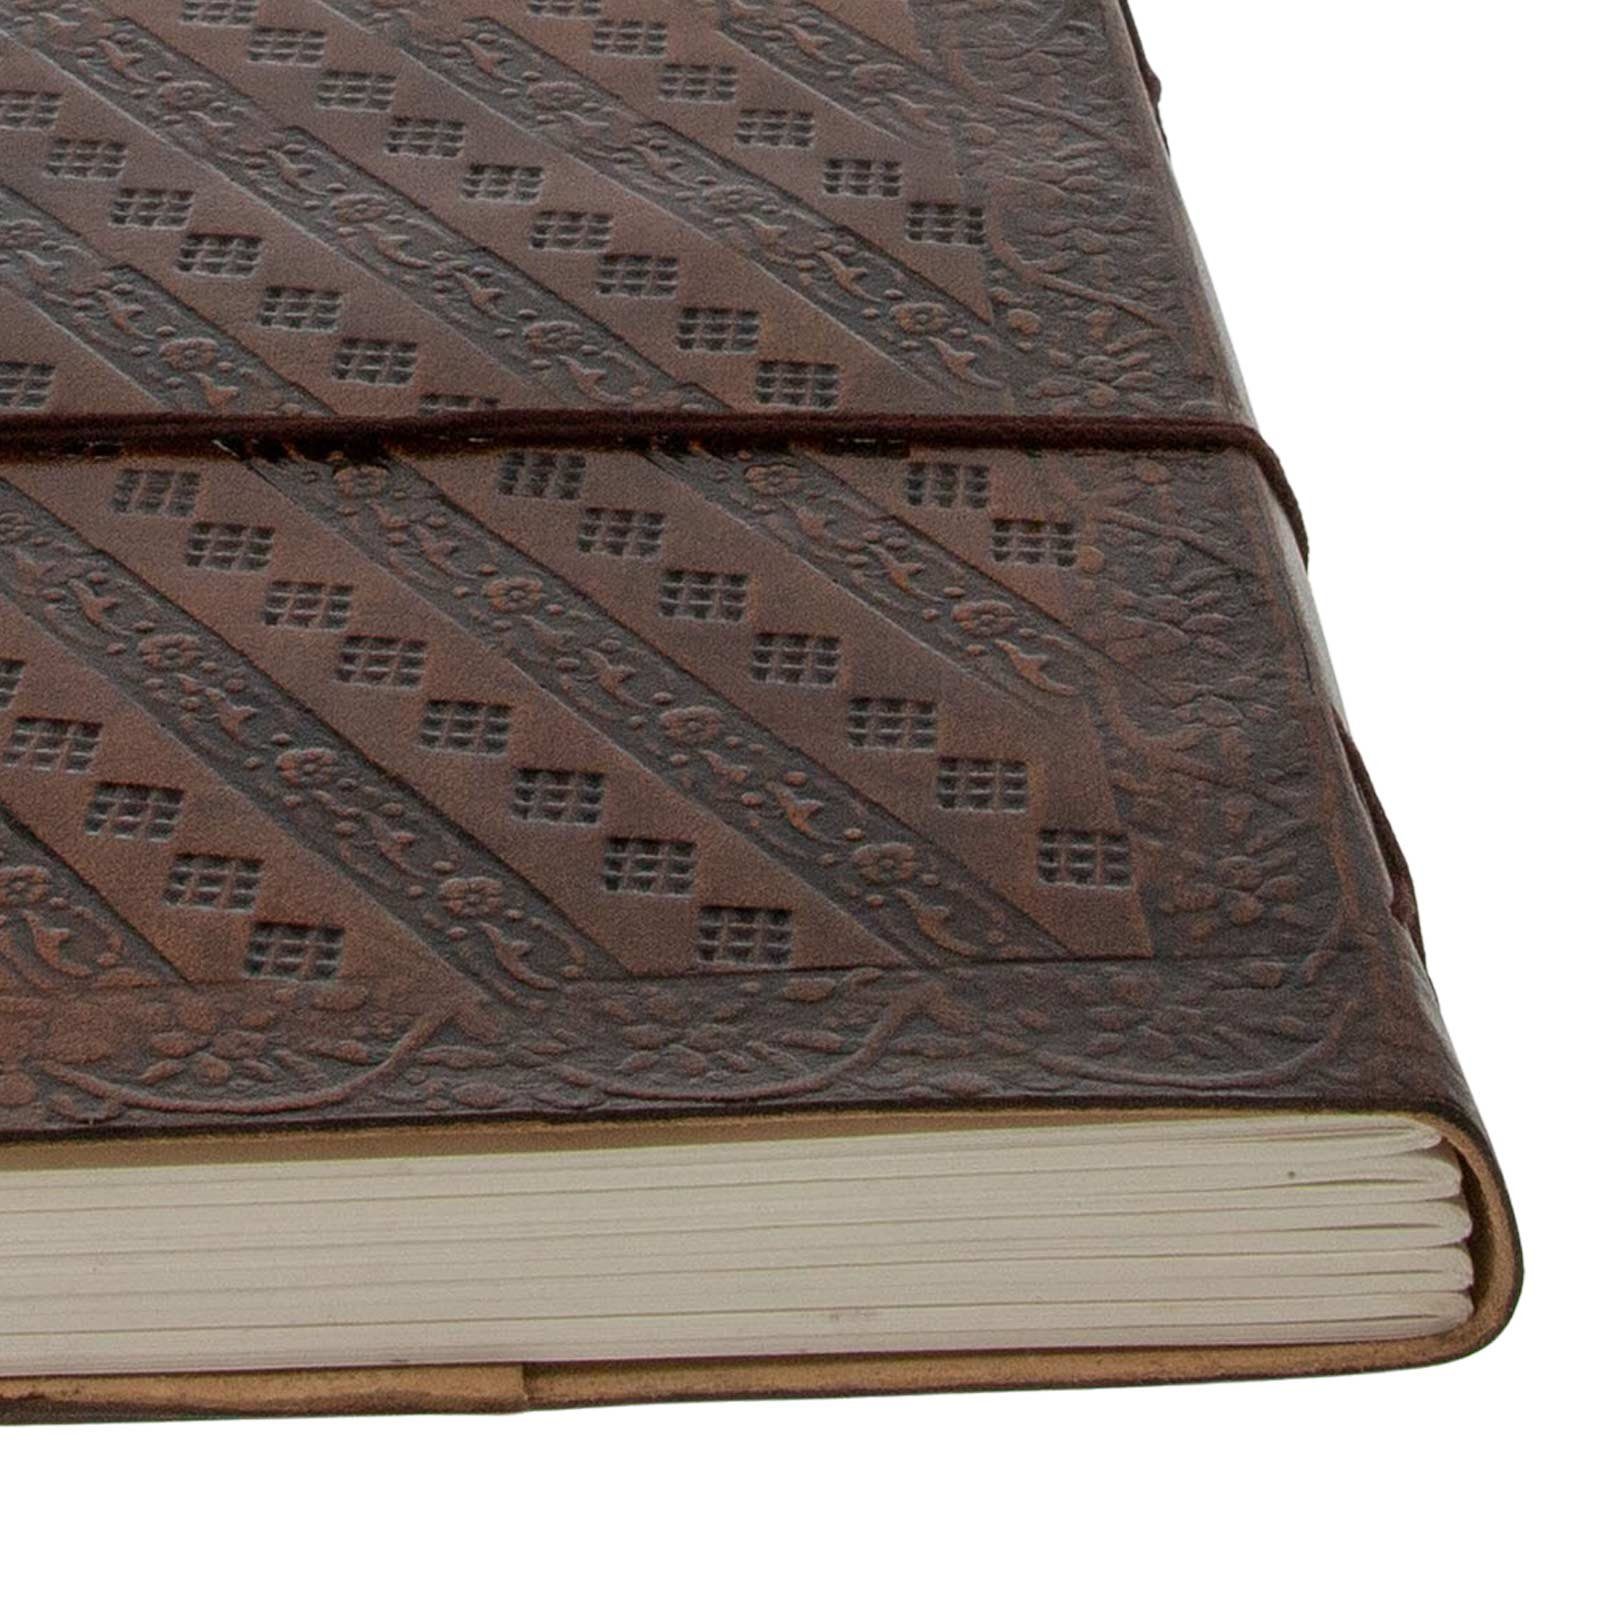 Tagebuch UND 18x13cm MAGIE Notizbuch Leder KUNST Tagebuch handgefertigt-geprägtes Ganesha Lord